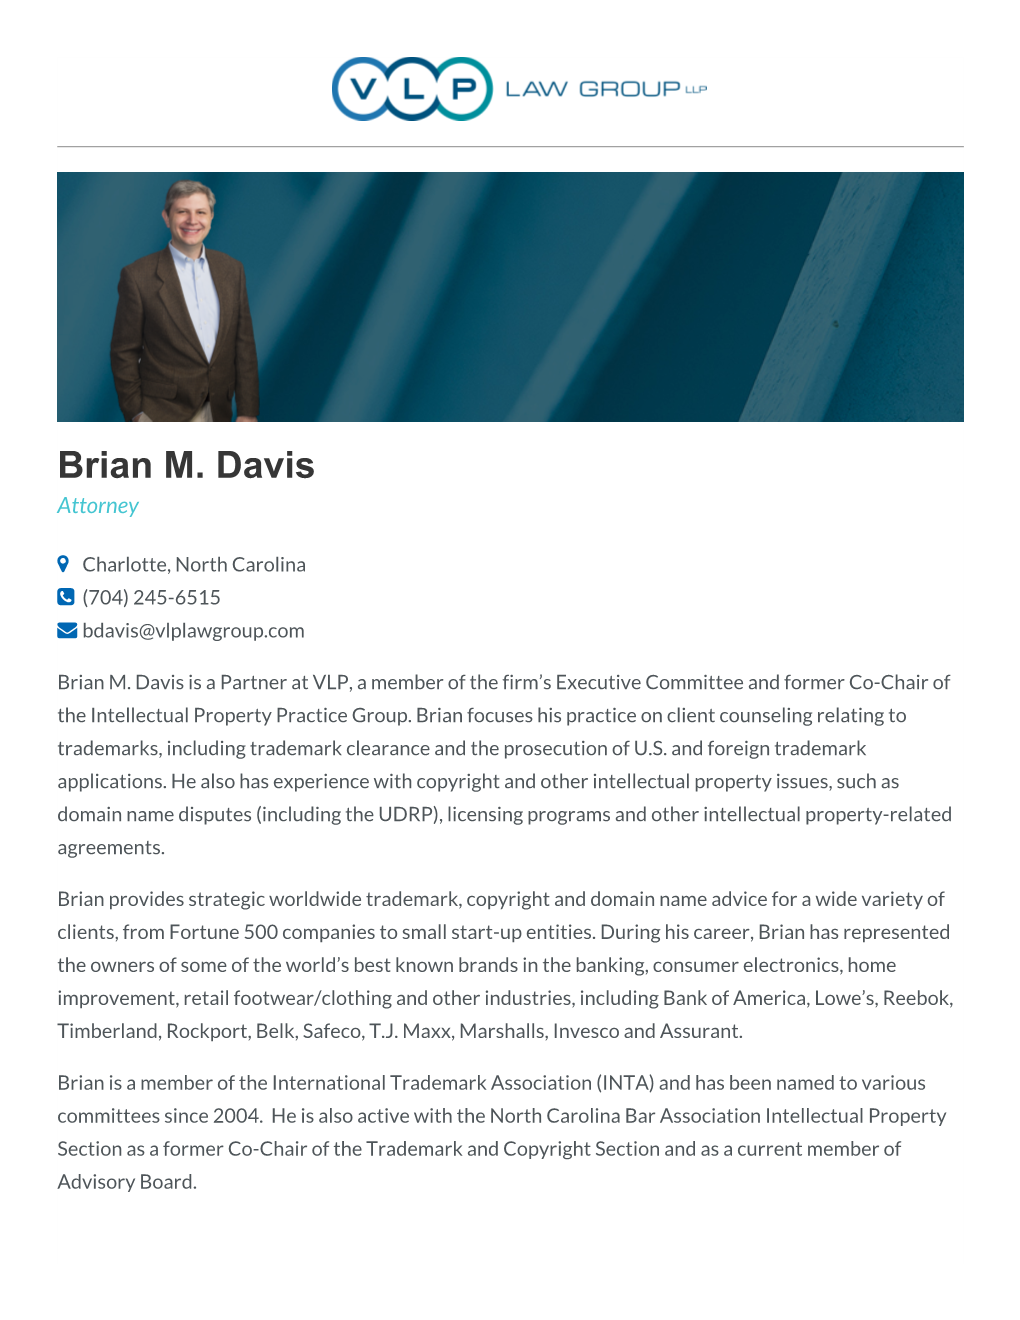 Brian M. Davis Attorney